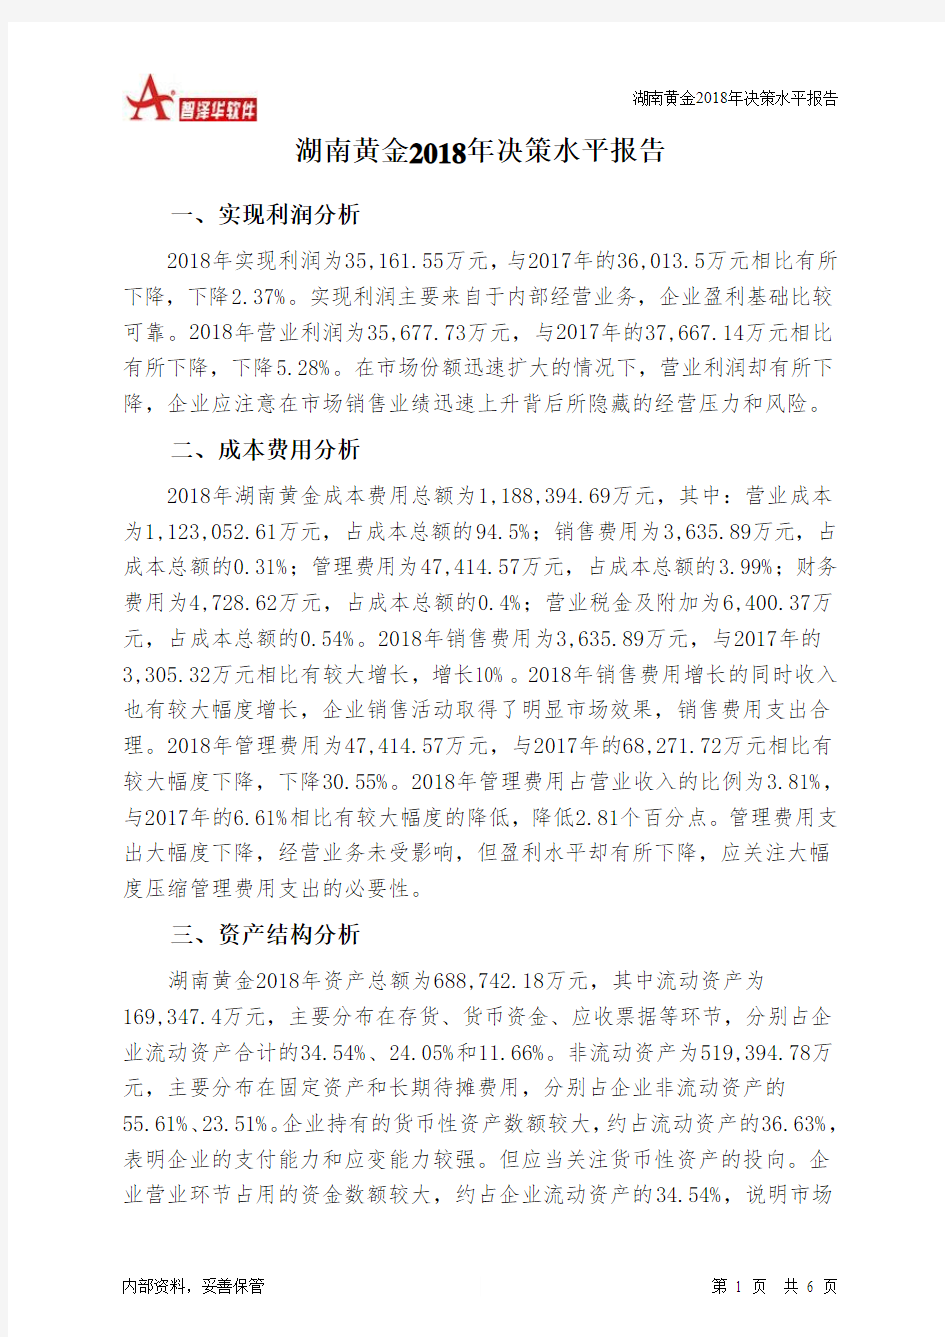 湖南黄金2018年决策水平分析报告-智泽华